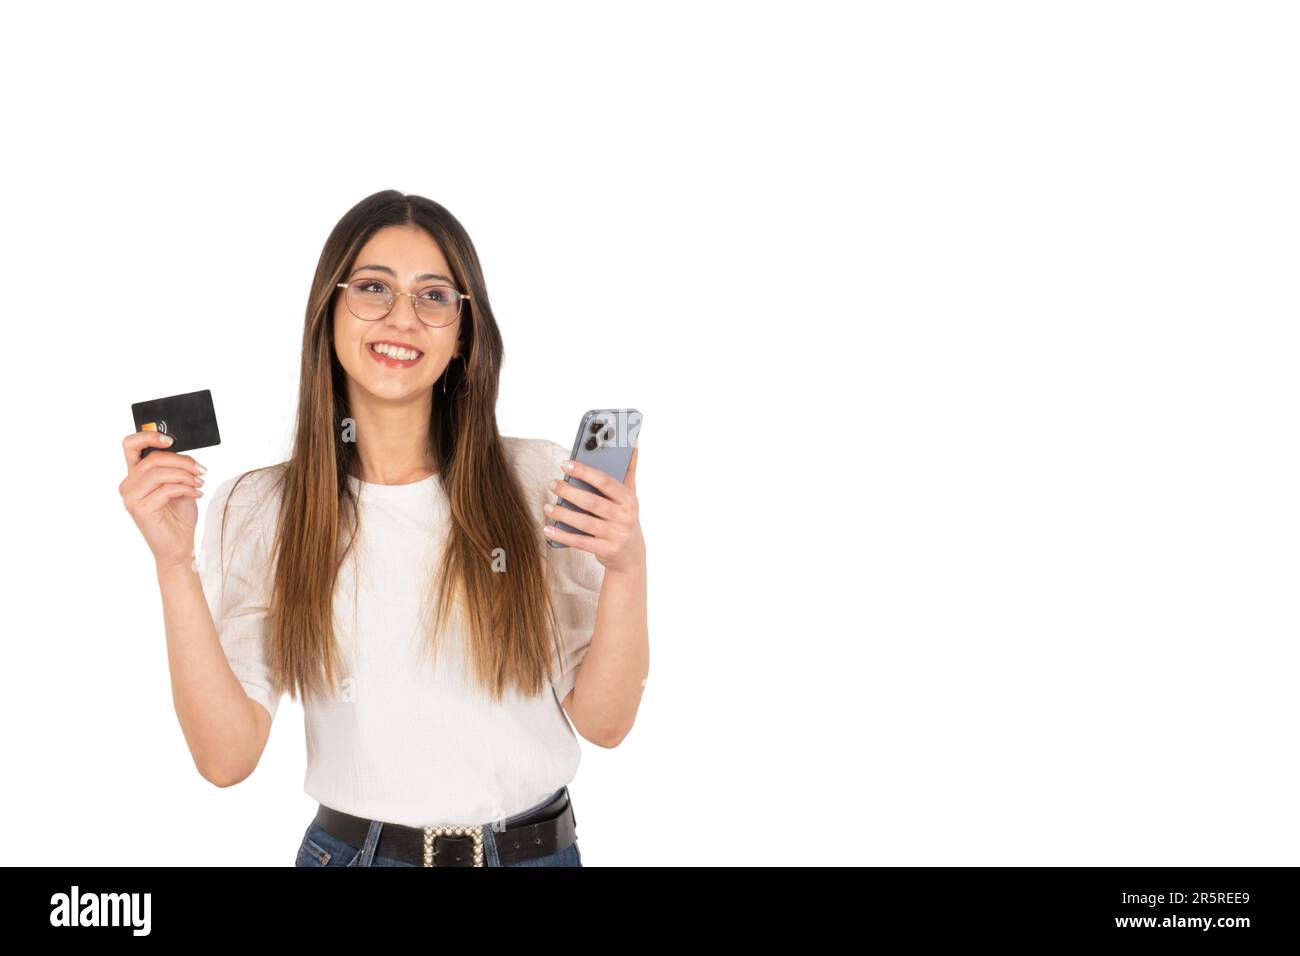 Online-Zahlungskonzept für junge Mädchen. Junge Brünette Frau mit schwarzer Plastikkarte und modernem Handy an den Händen. Stockfoto